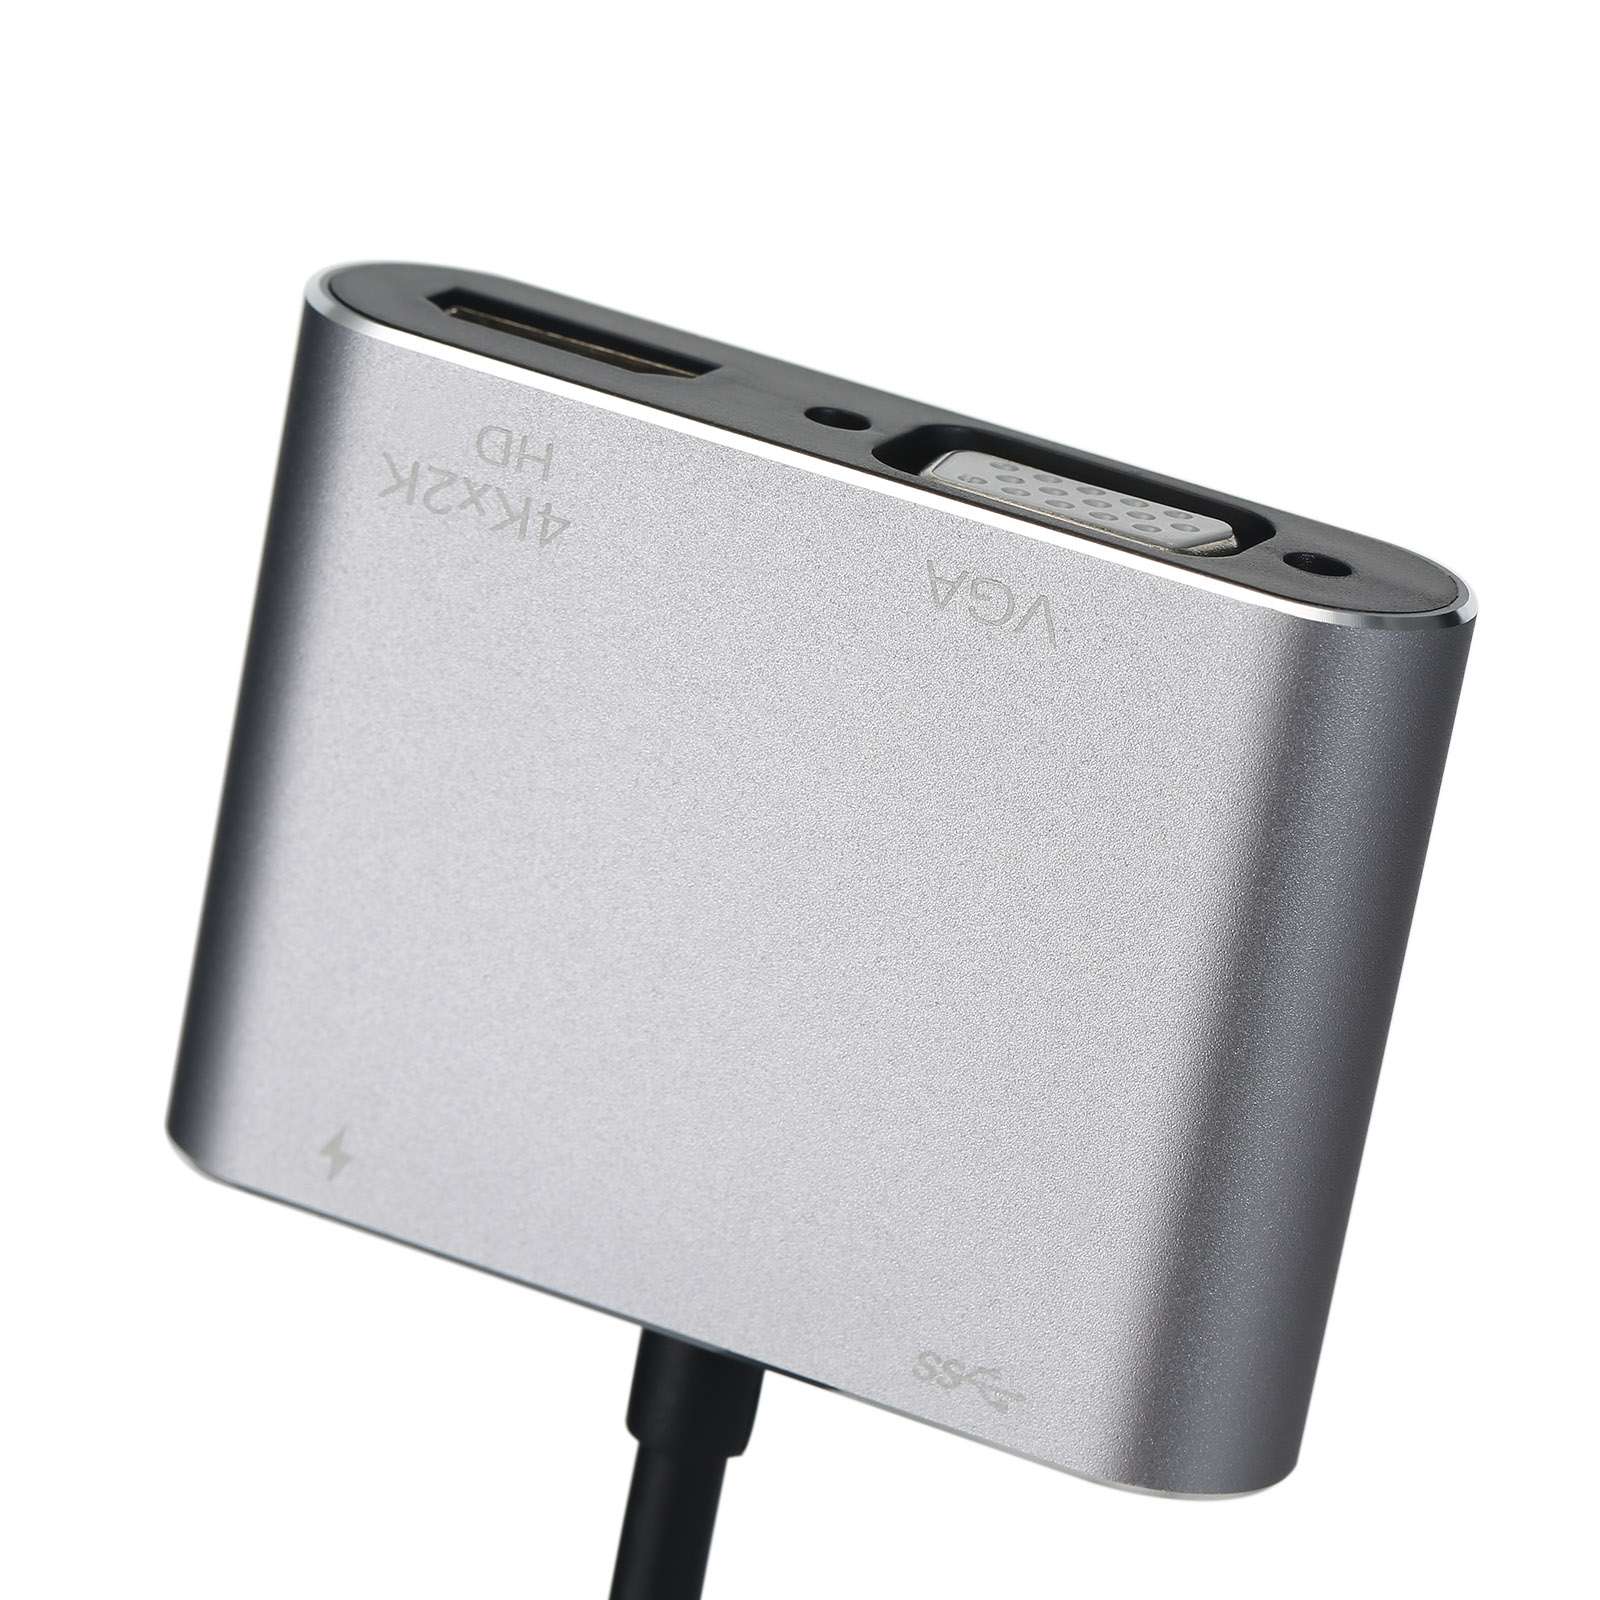 Bộ Chuyển Đổi 4 Trong 1 Hub Loại C Sang HD VGA USB Loại C Với Đầu Ra HD 4K Cổng Sạc USB 3.0 Pd